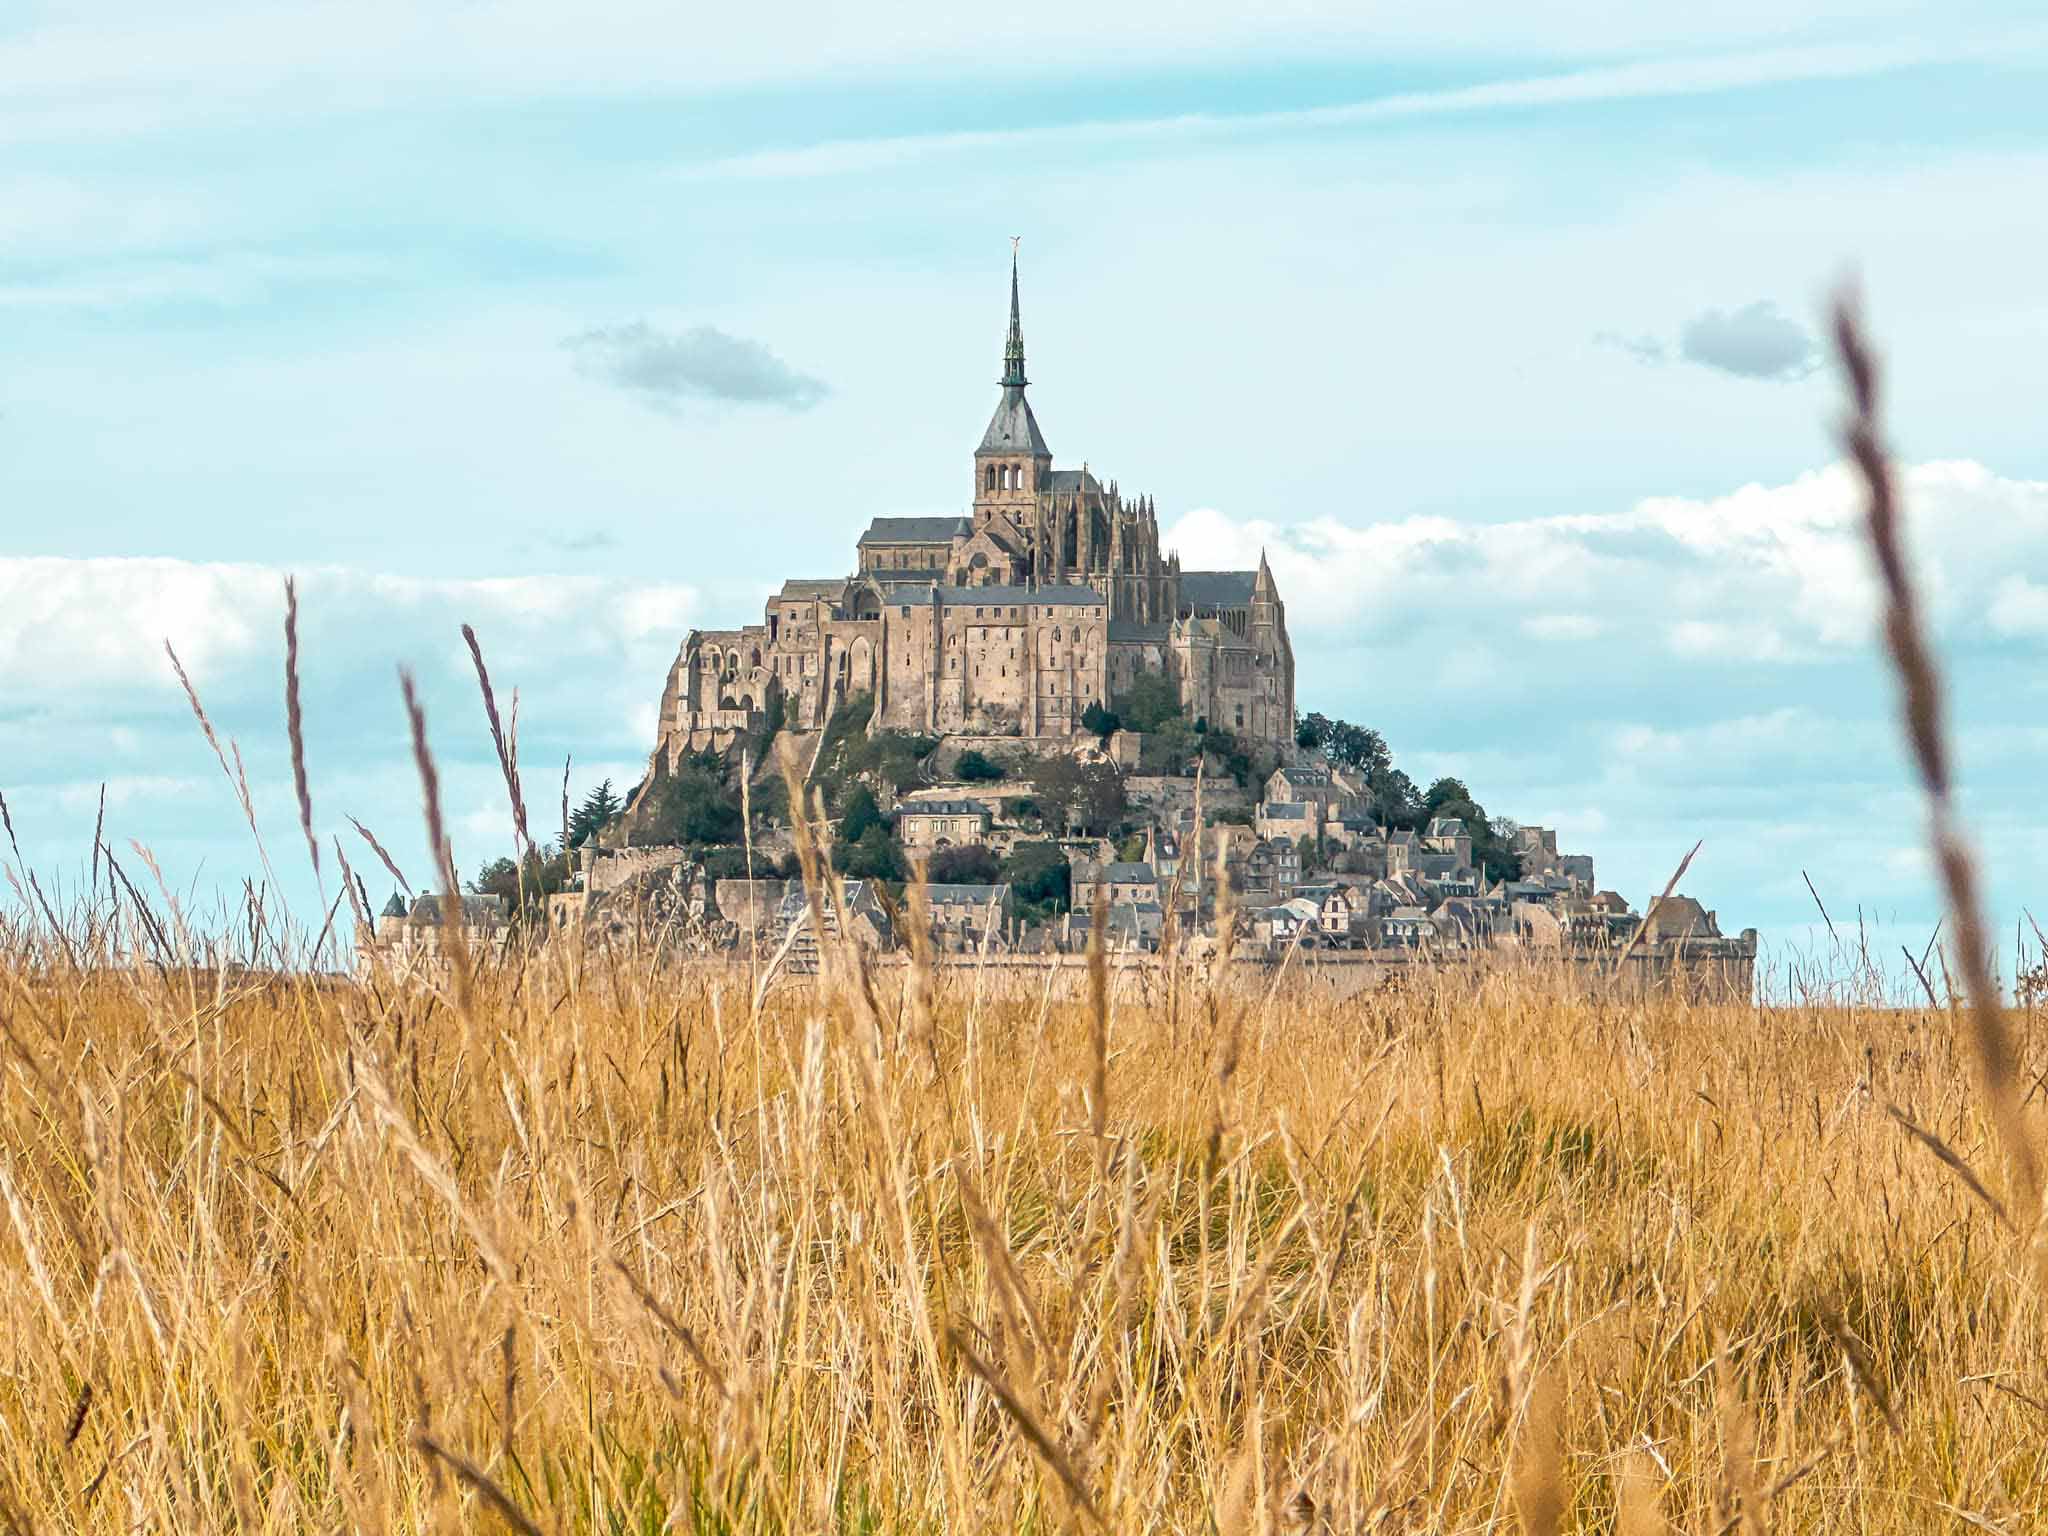 Tu viện cổ kính 1000 năm tuổi nằm giữa biển ở Pháp